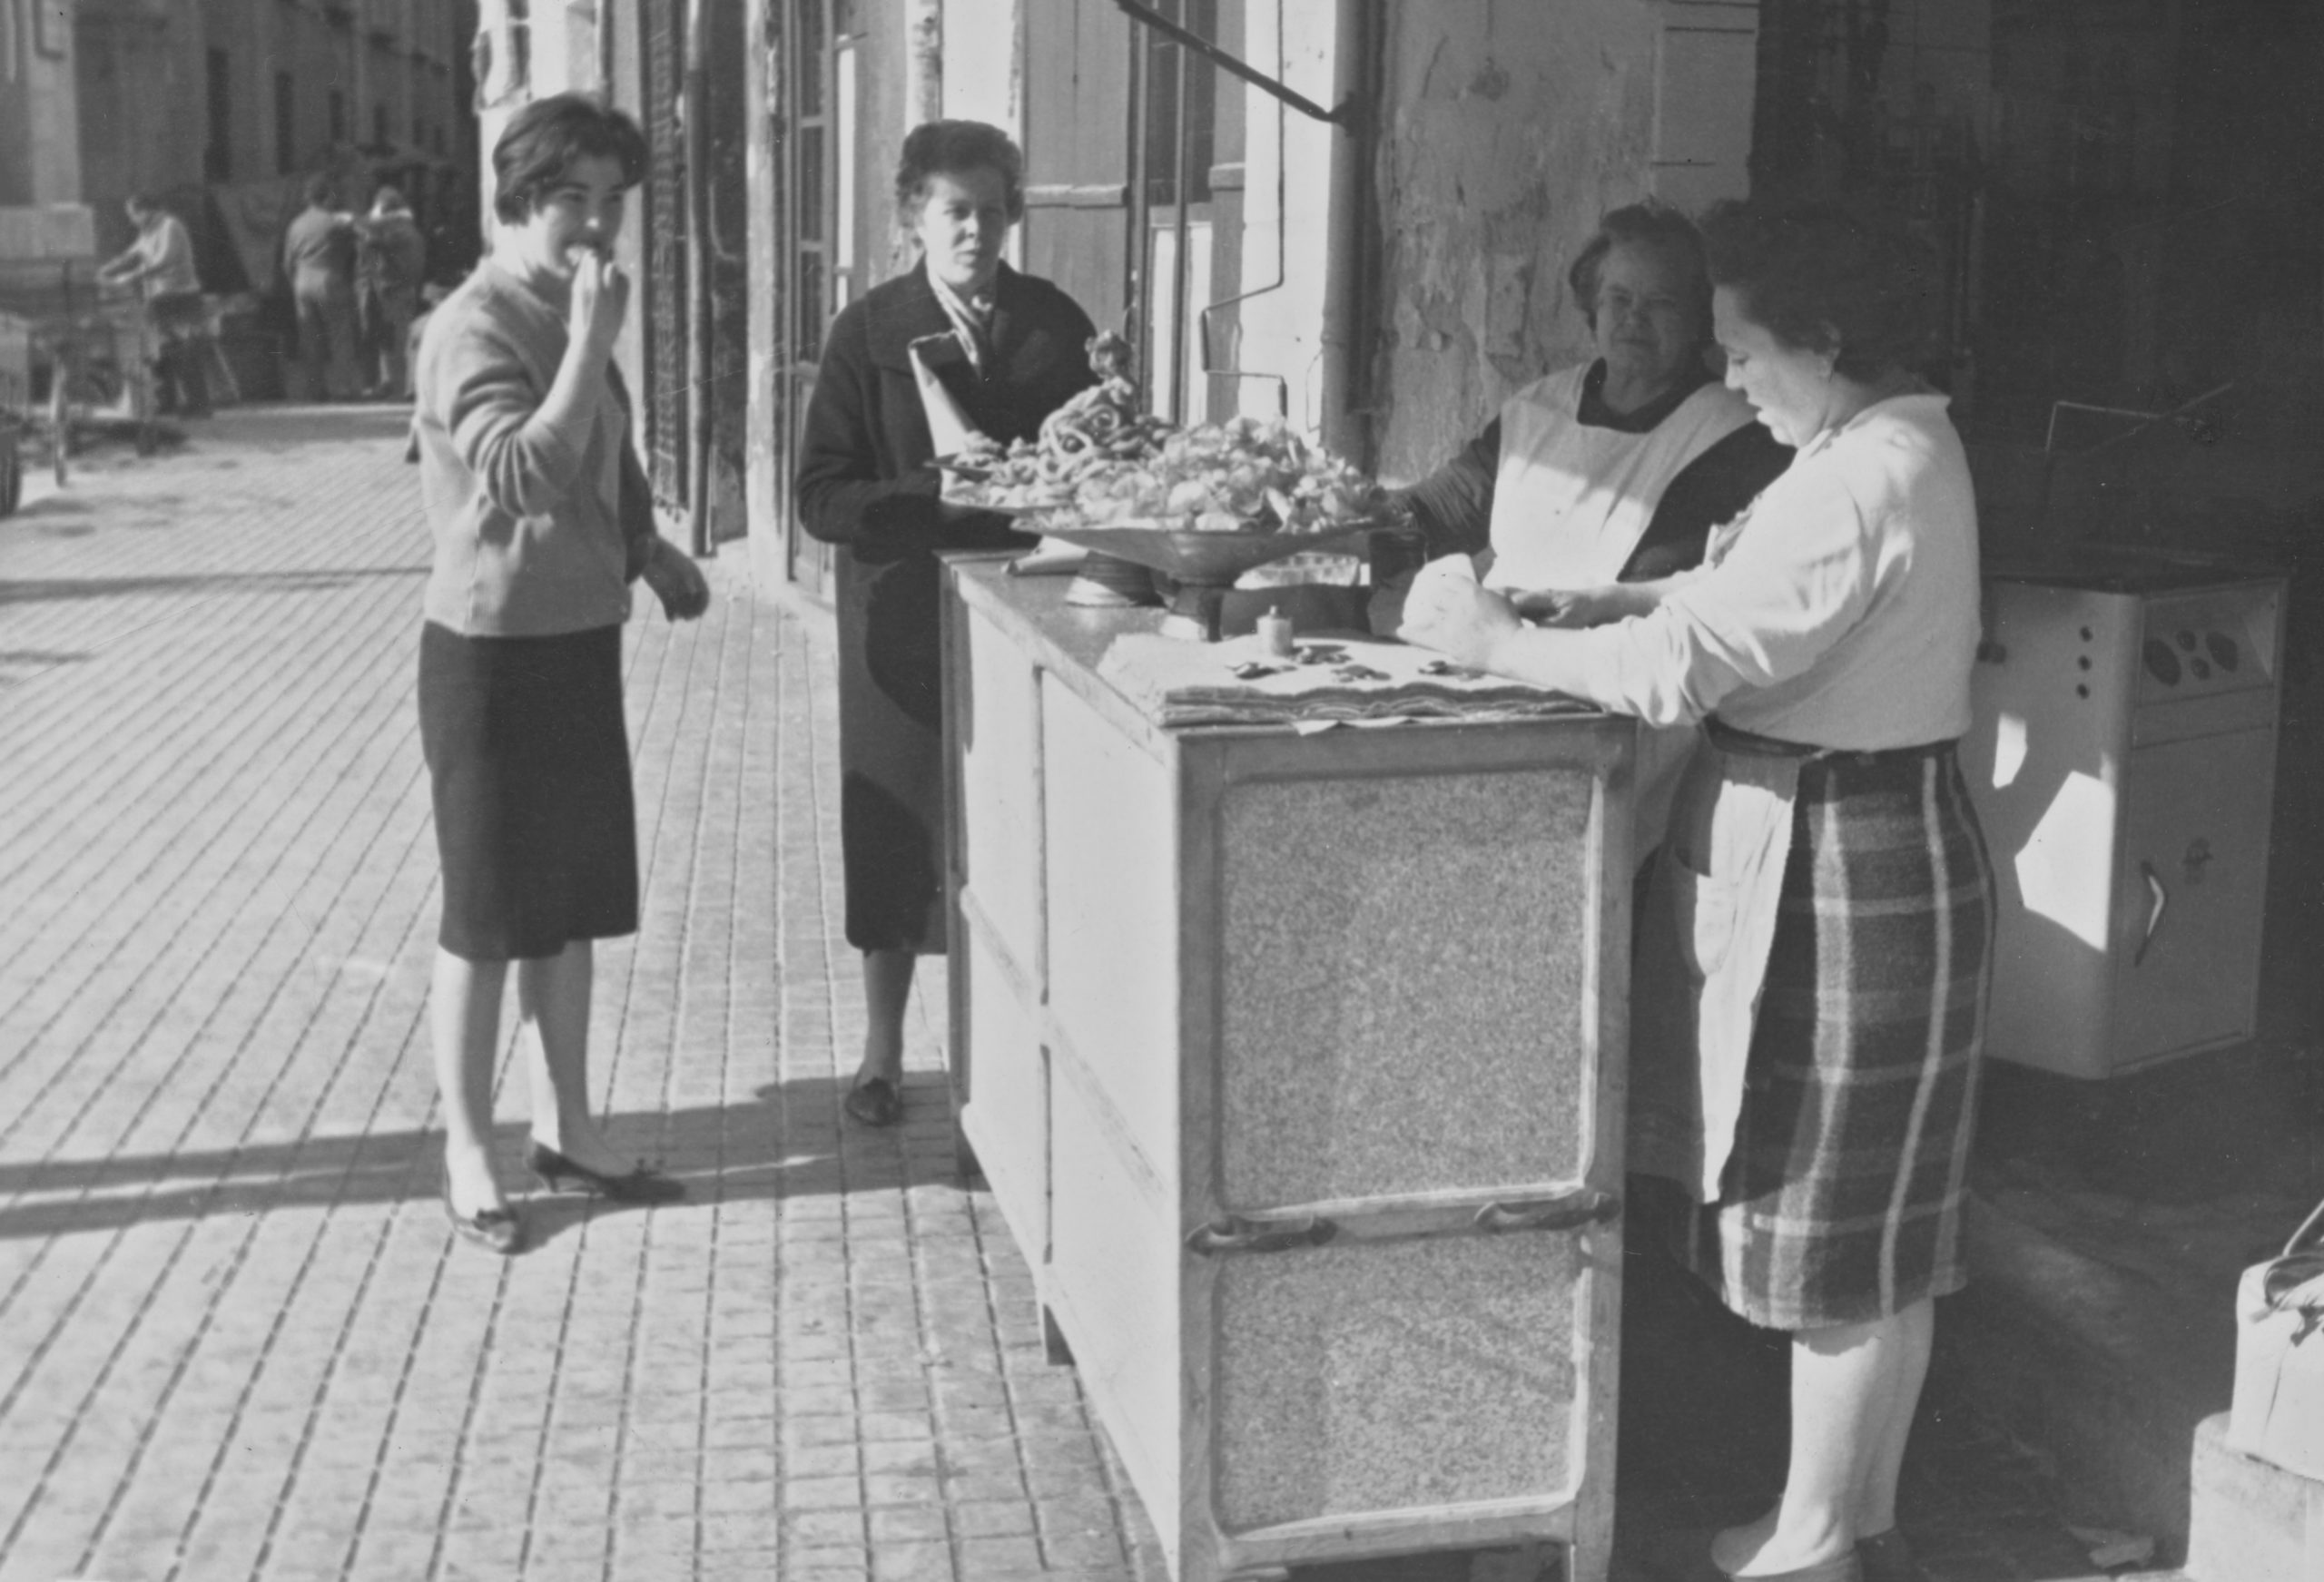 Lire la suite à propos de l’article Mujeres despachando en la churrería